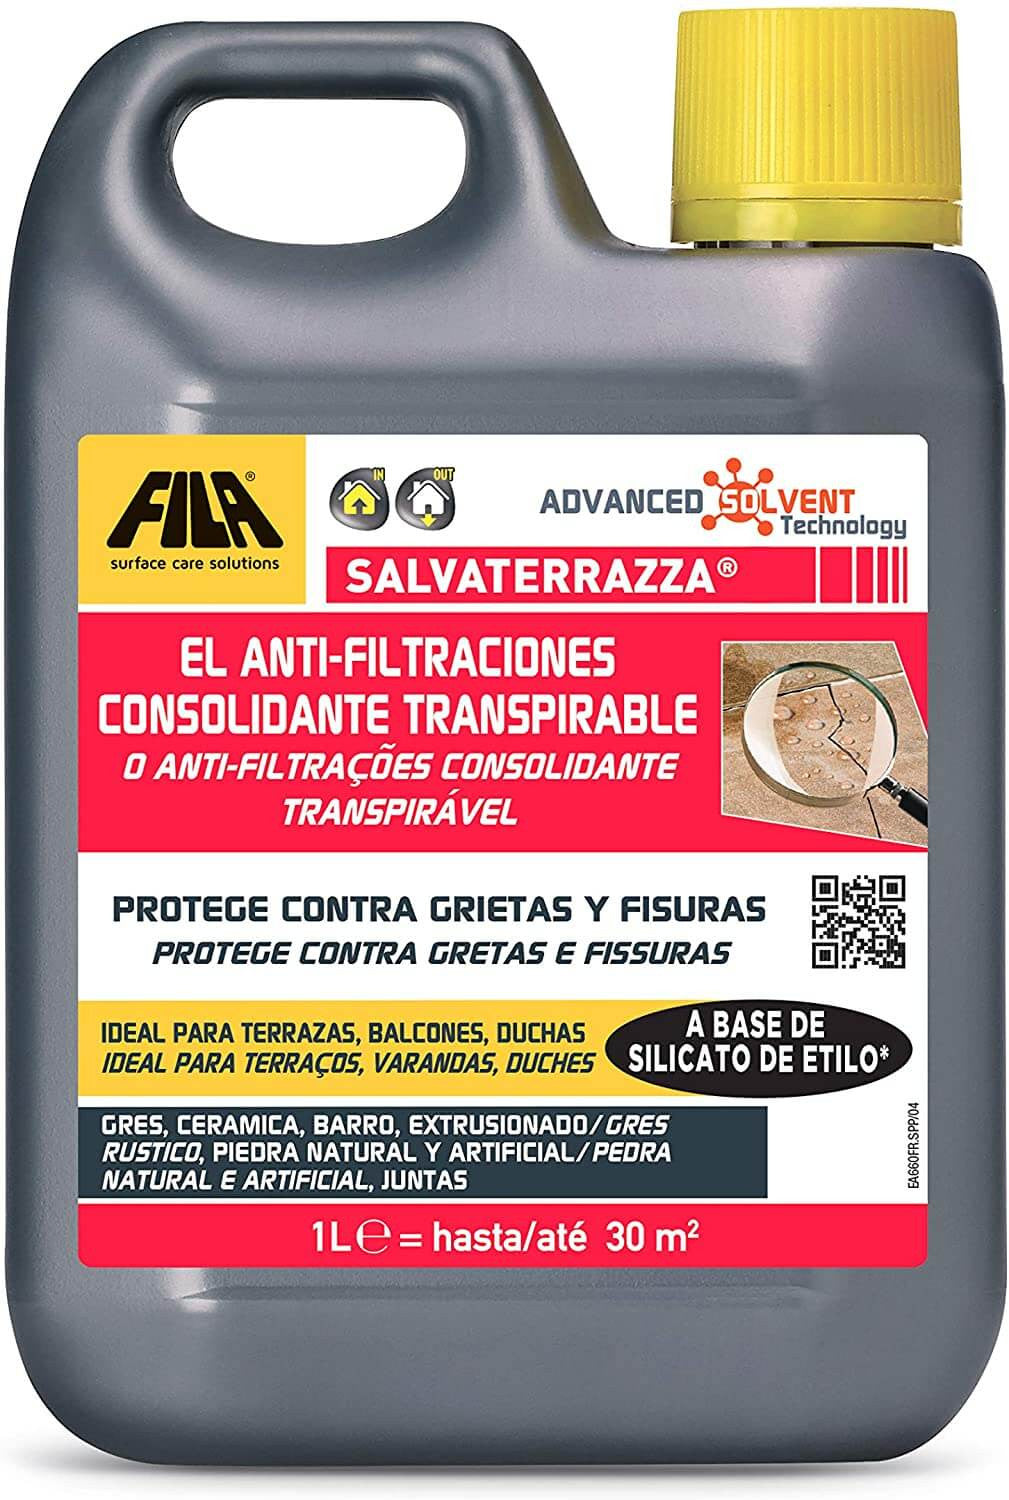 Garrafa Anti-Filtraciones Consolidante Transpirable 1L Fila SALVATERRAZZA  - 1